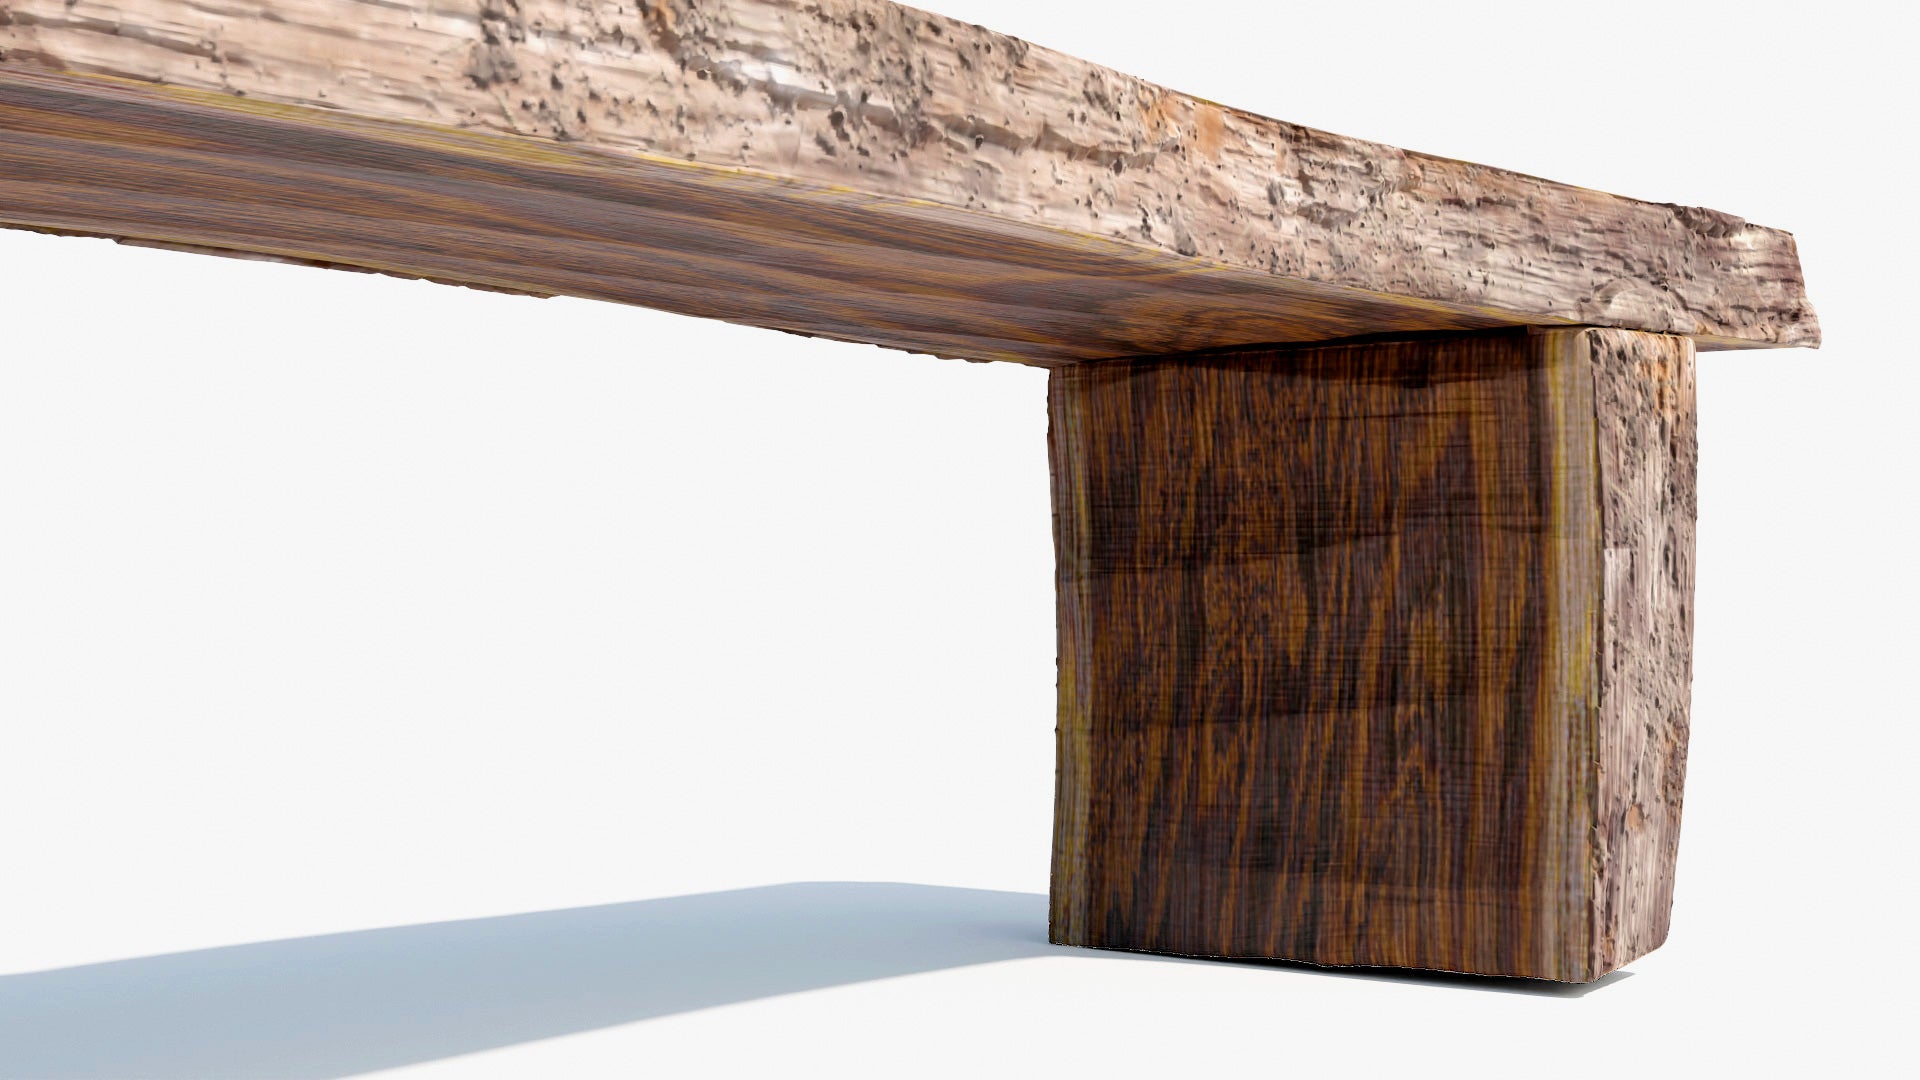 log bench tree section handmade 3d model blender OBJ PBR textures